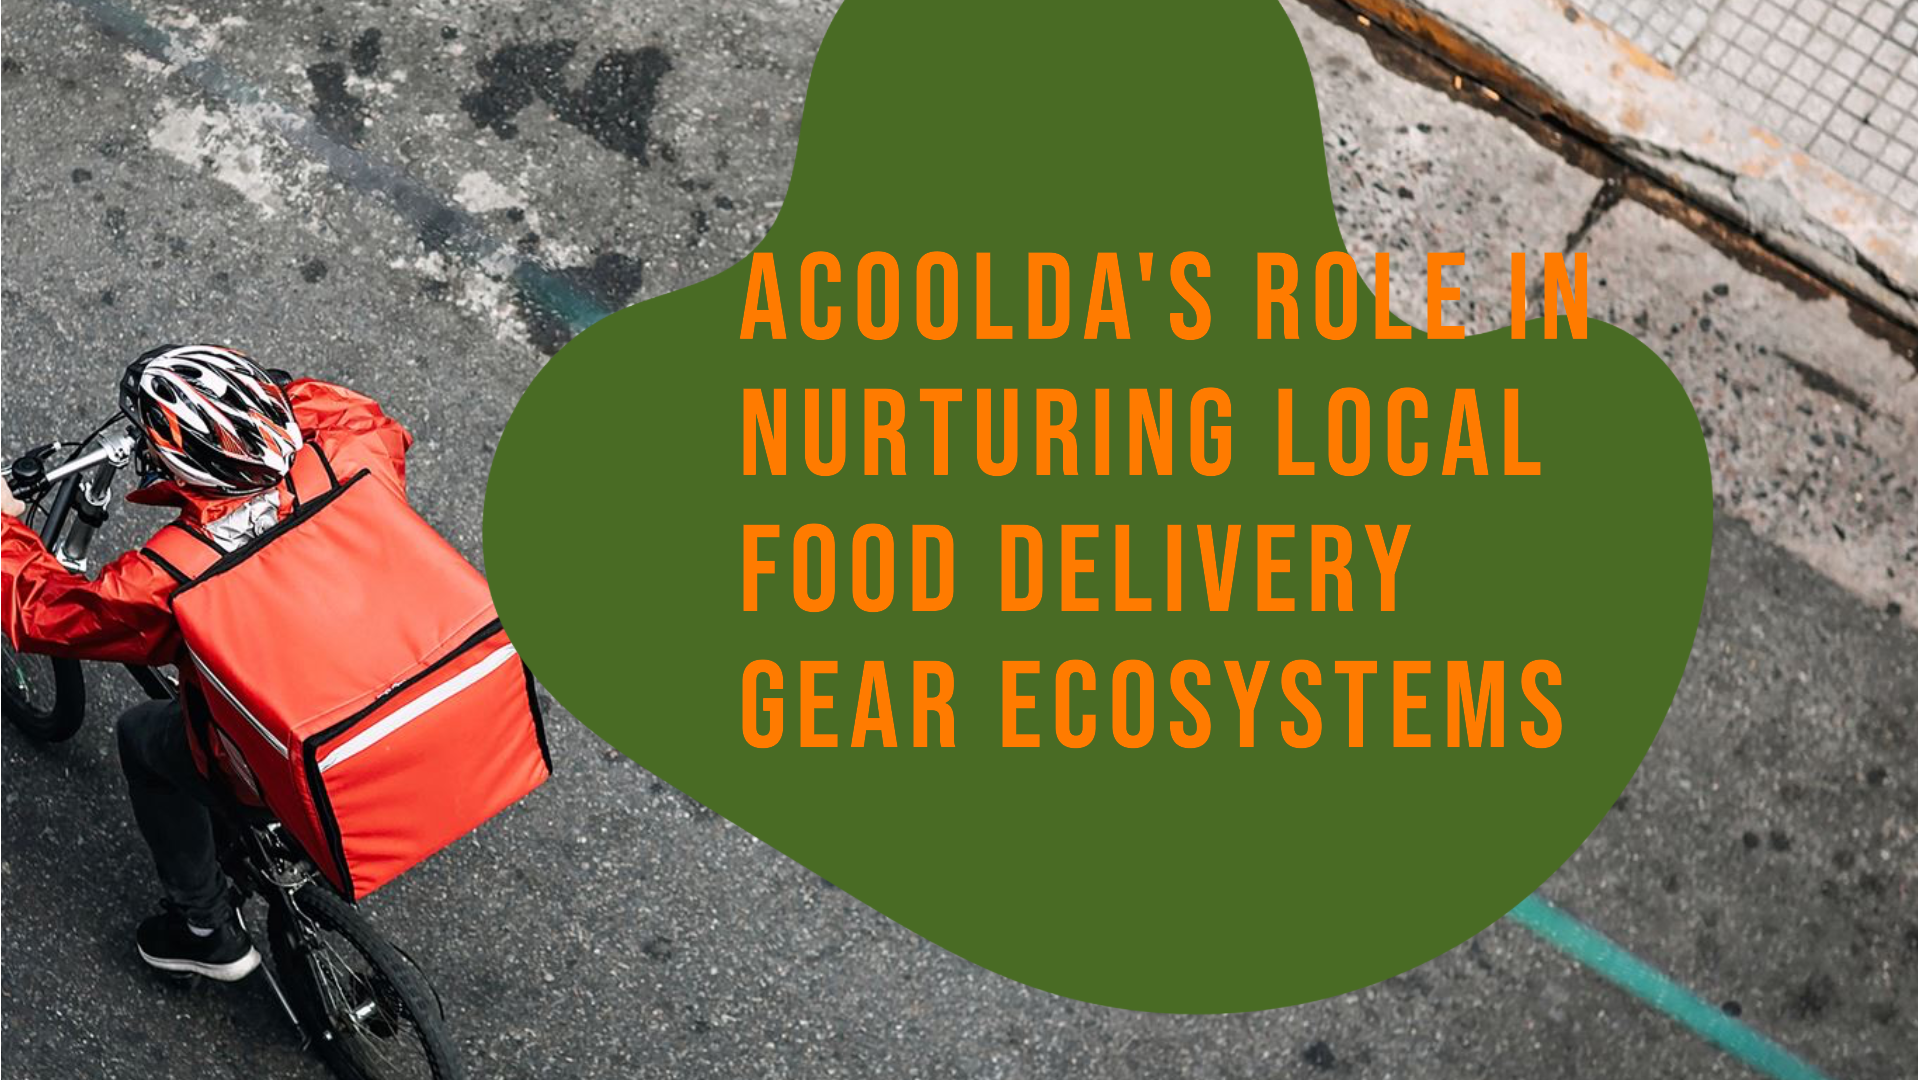 ACOOLDA munus in nutriendo Local Food Delivery Apparatus Ecosystems